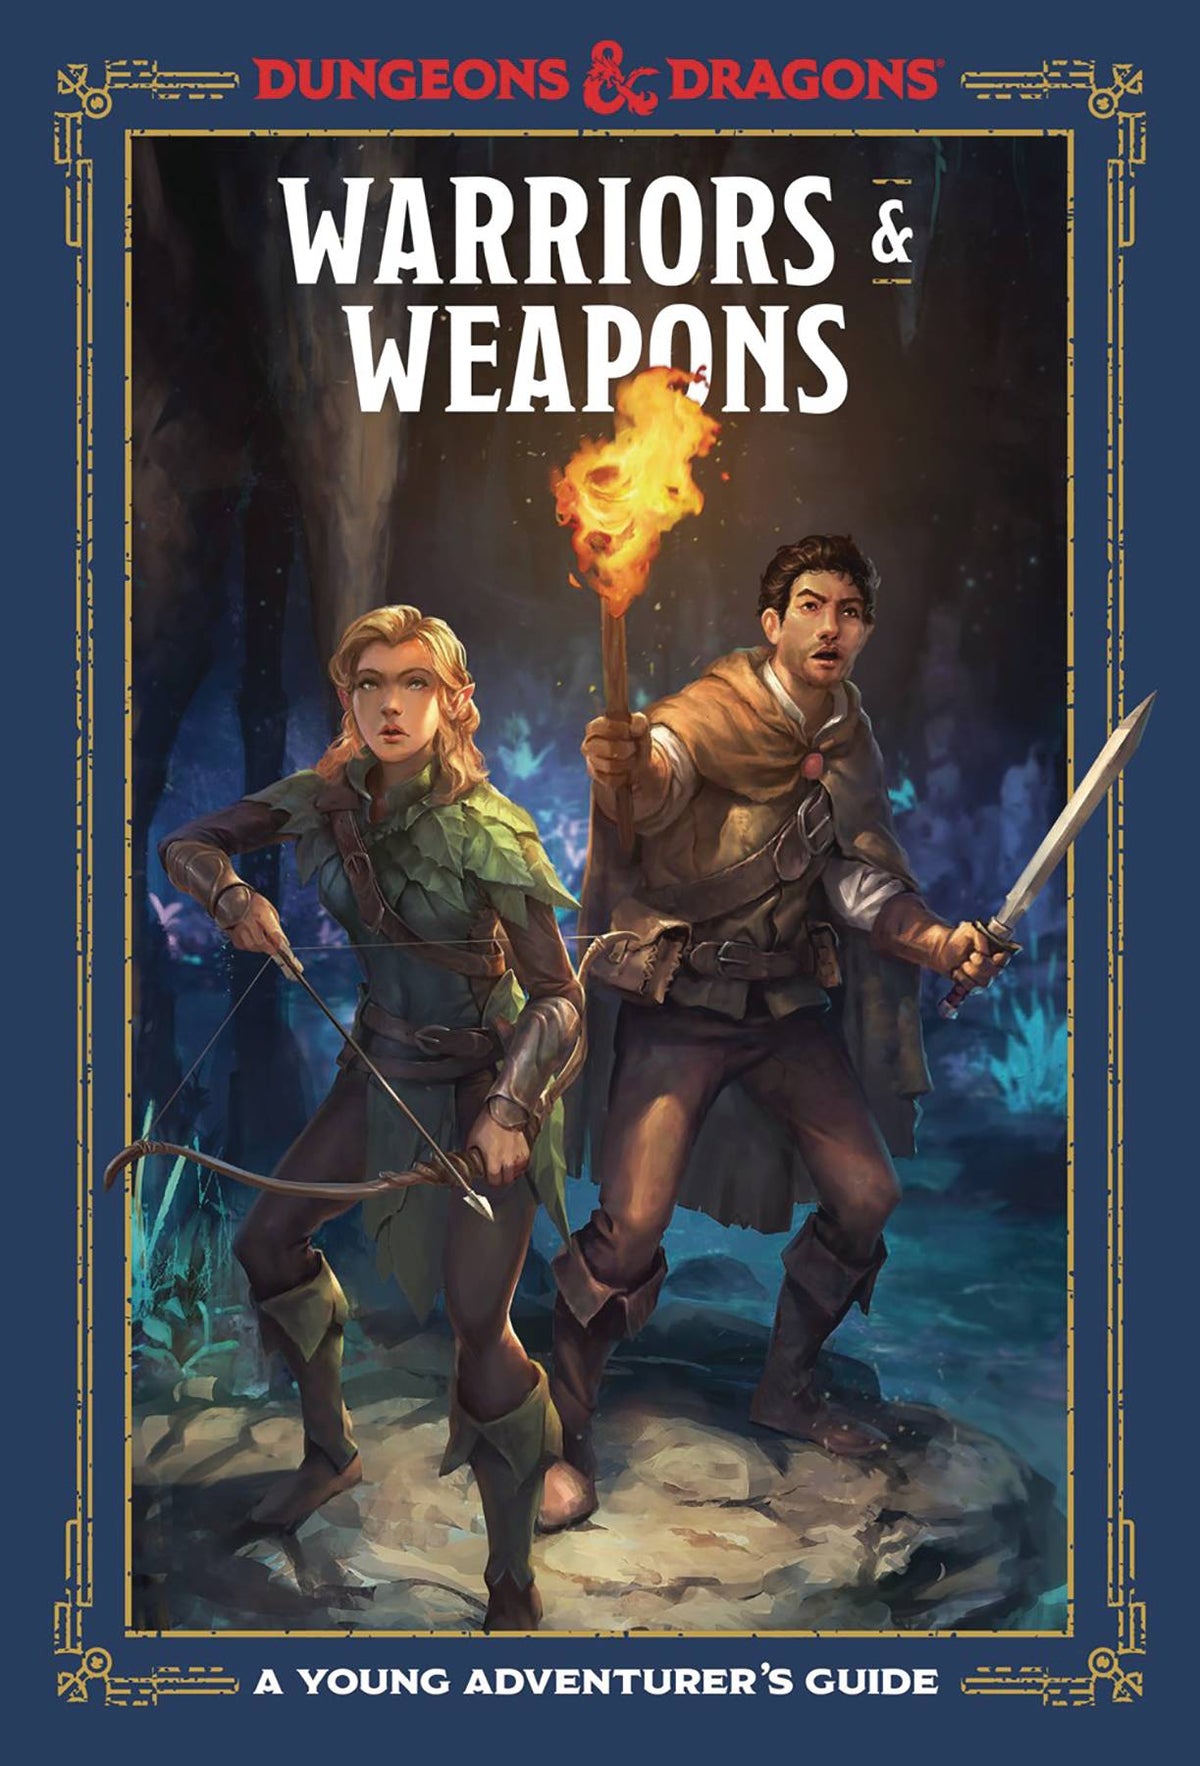 D&D: Young Adventurer's Guide - Warriors & Weapons - Third Eye